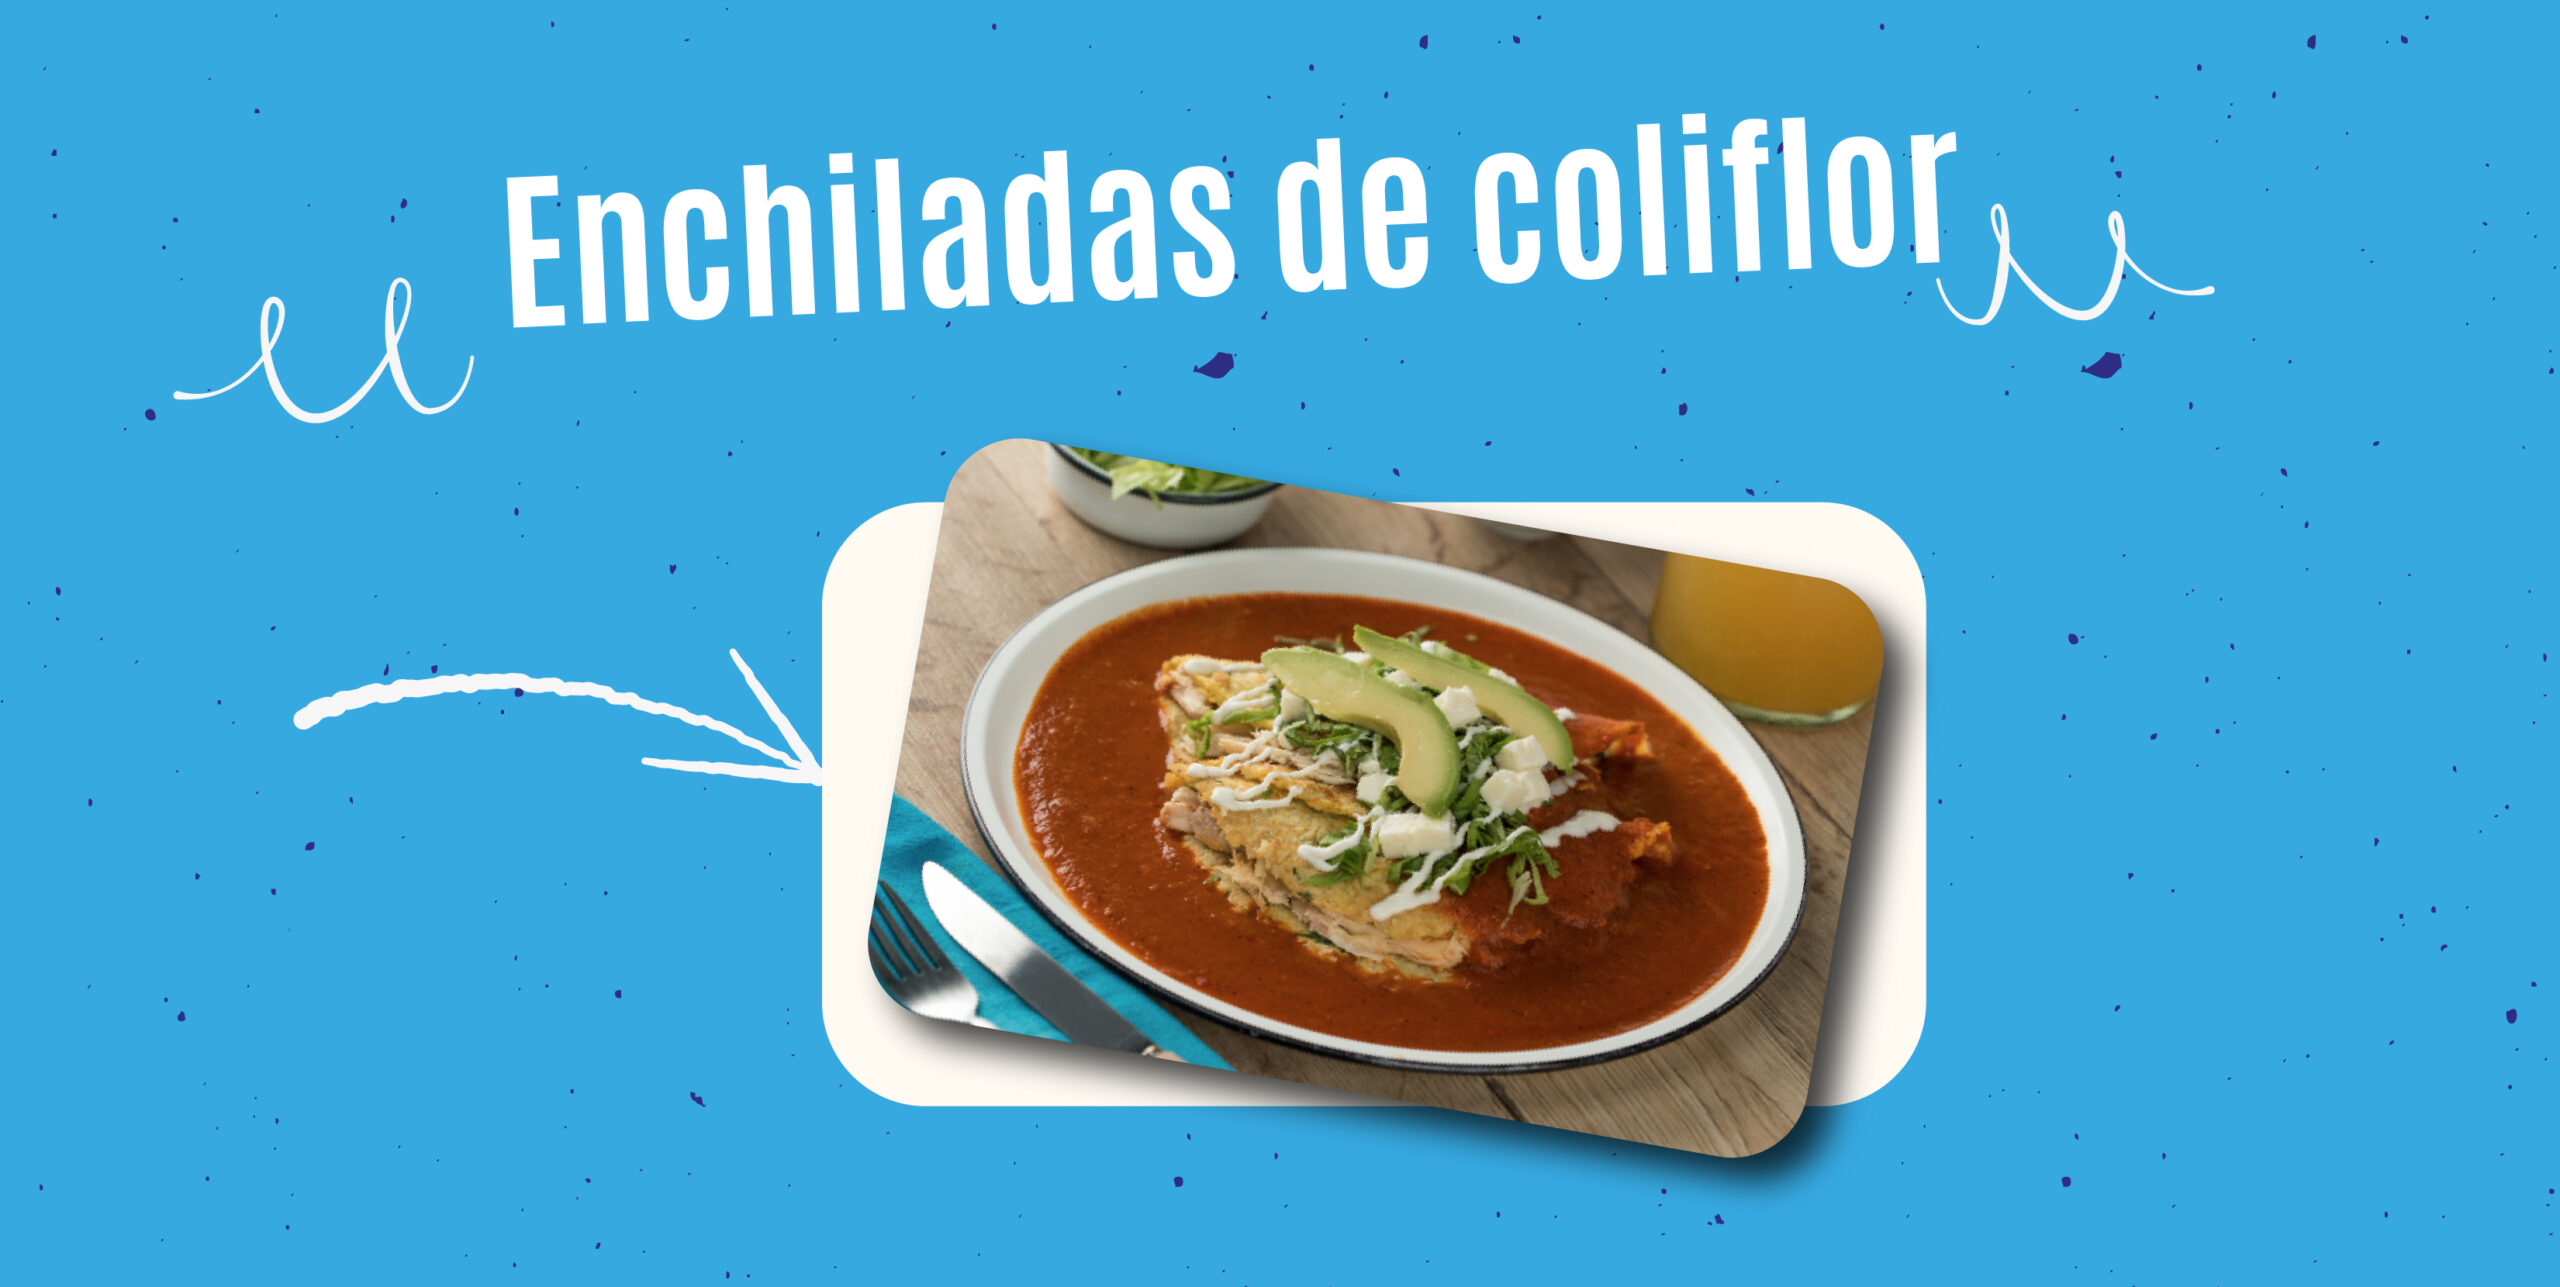 Bienestar AGUAKAN: Enchiladas de coliflor